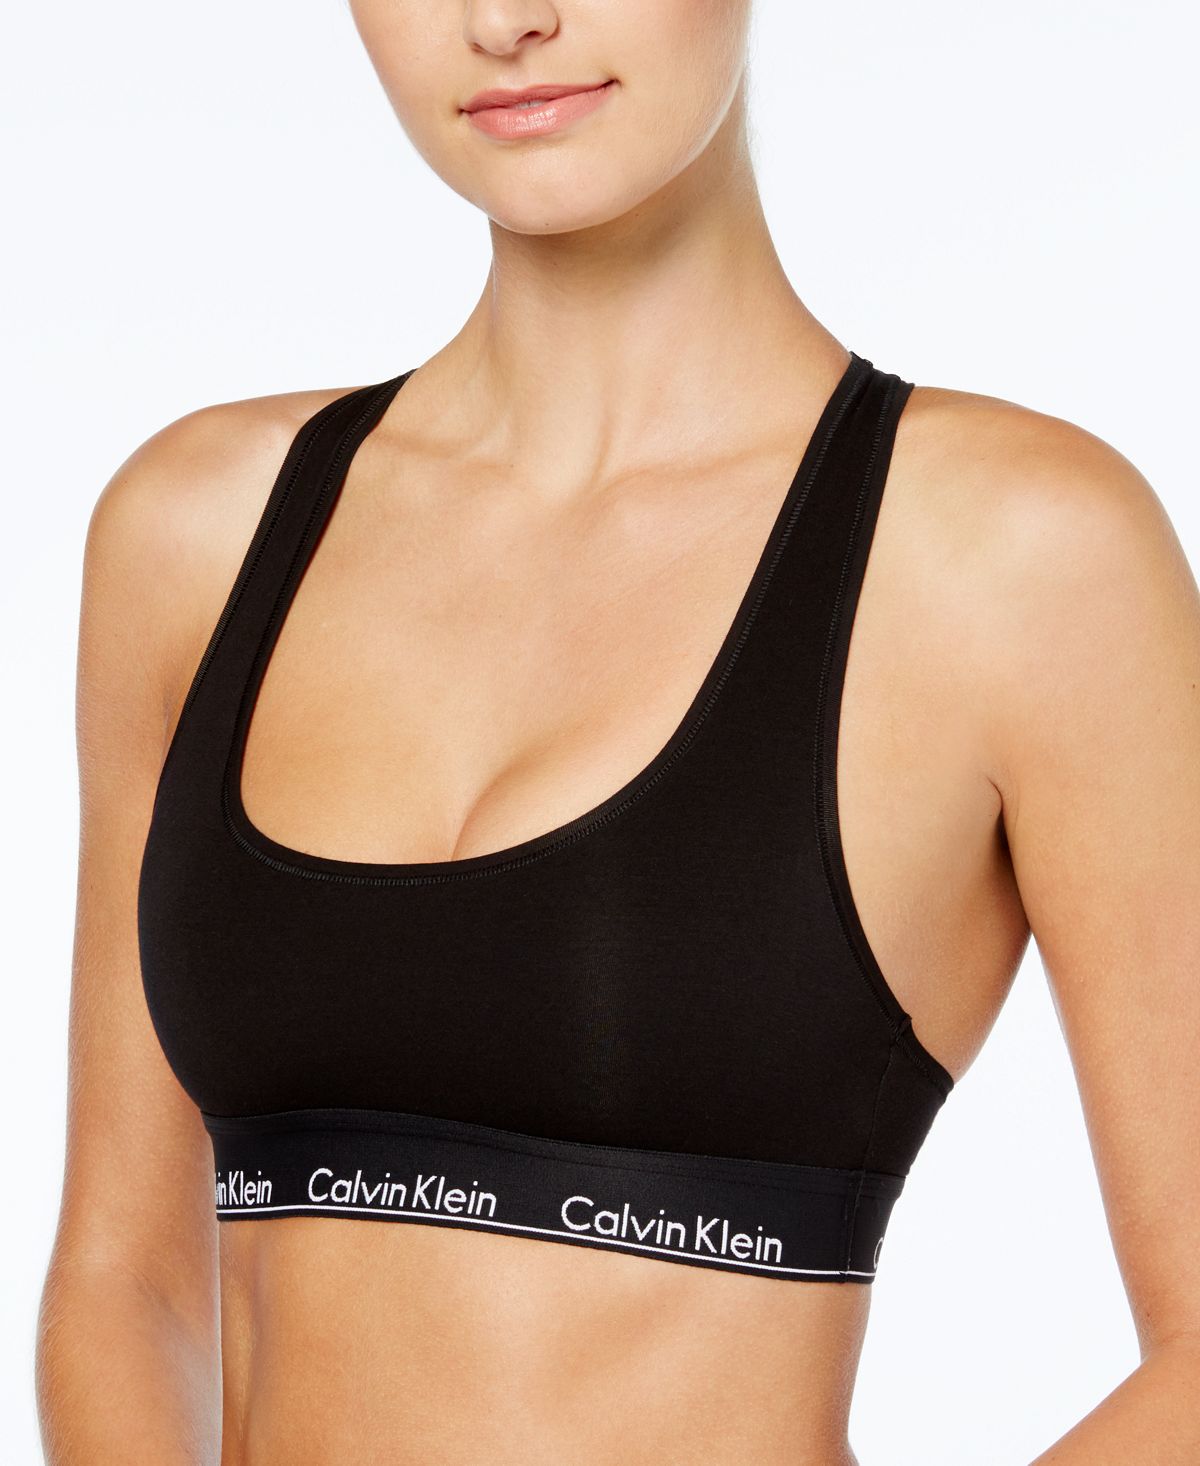 Calvin Klein Modern Cotton Bralette F3785 Black With Black